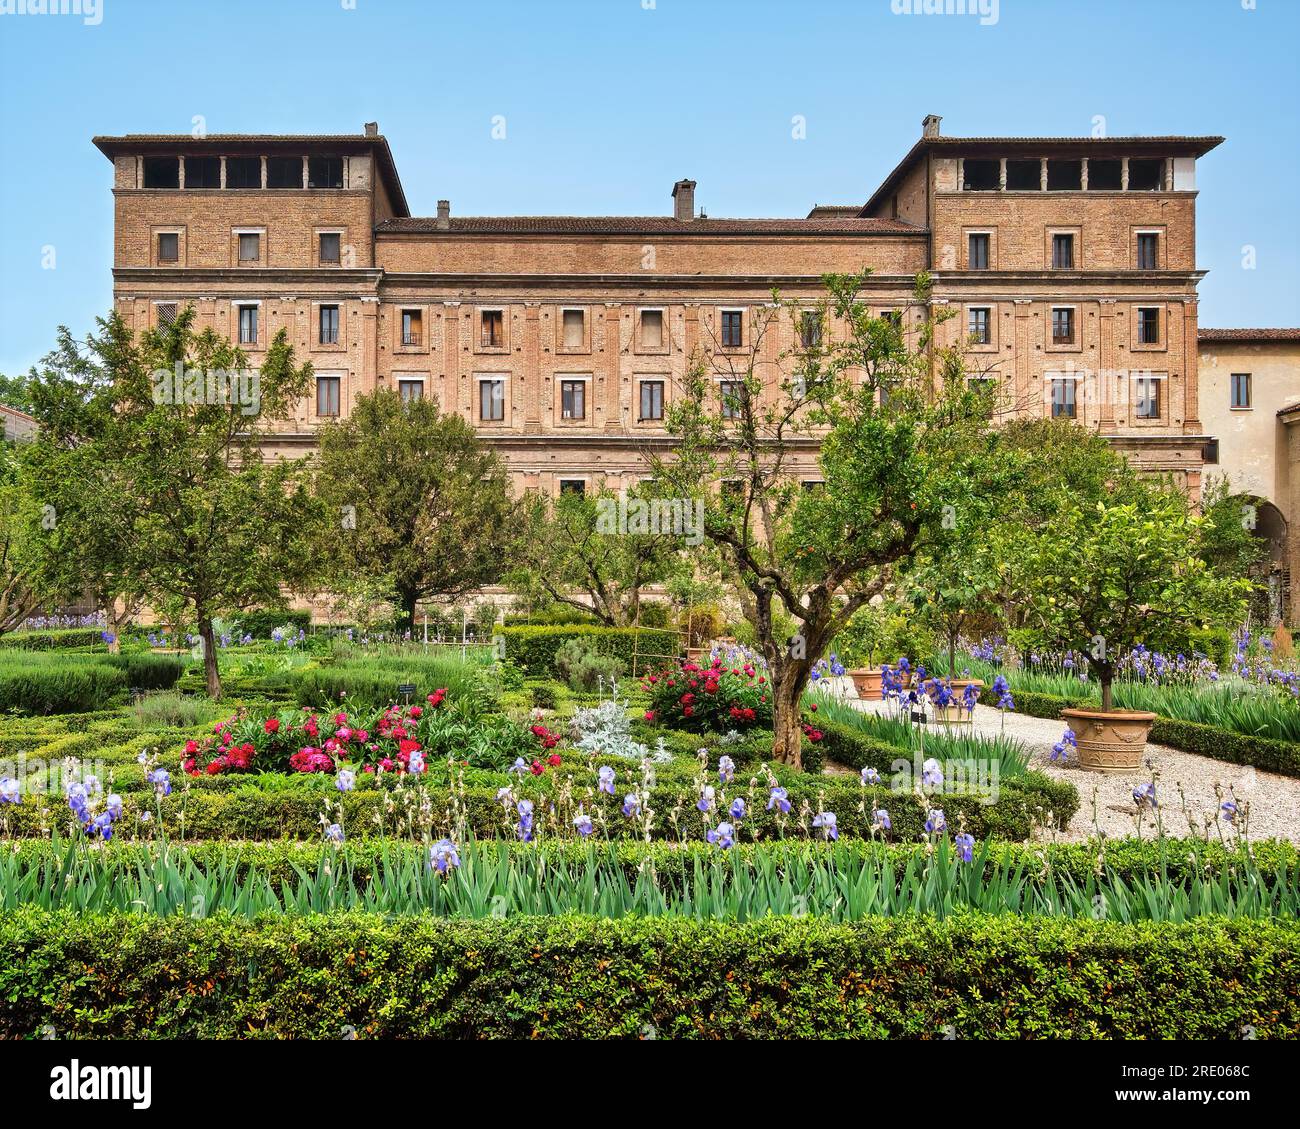 Der Herzogspalast in Mantua, Italien. Der Giardino dei Semplici aus dem 17. Jahrhundert (Simples Garden), weil dort Heilpflanzen oder „einfache“ Pflanzen angebaut wurden. Stockfoto